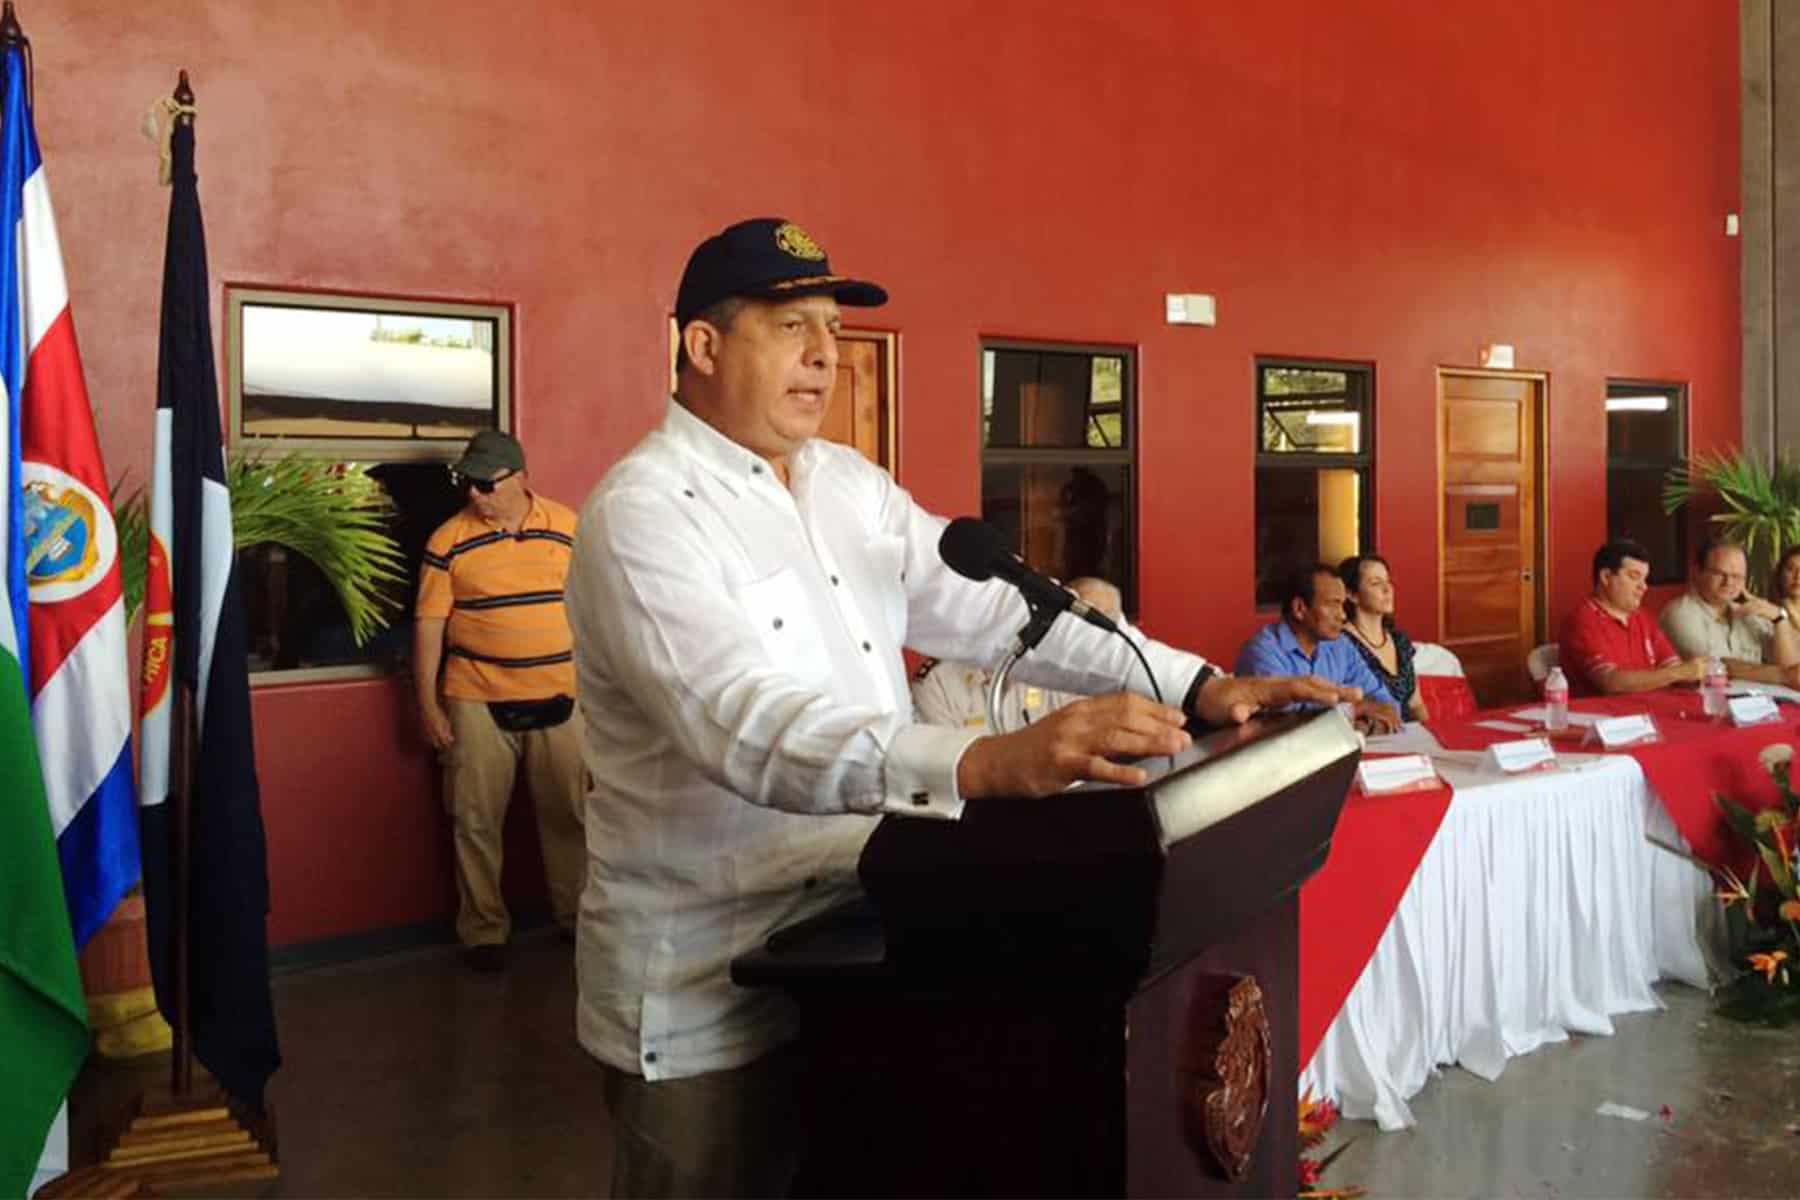 President Luis Guillermo Solís at La Cruz, Guanacaste